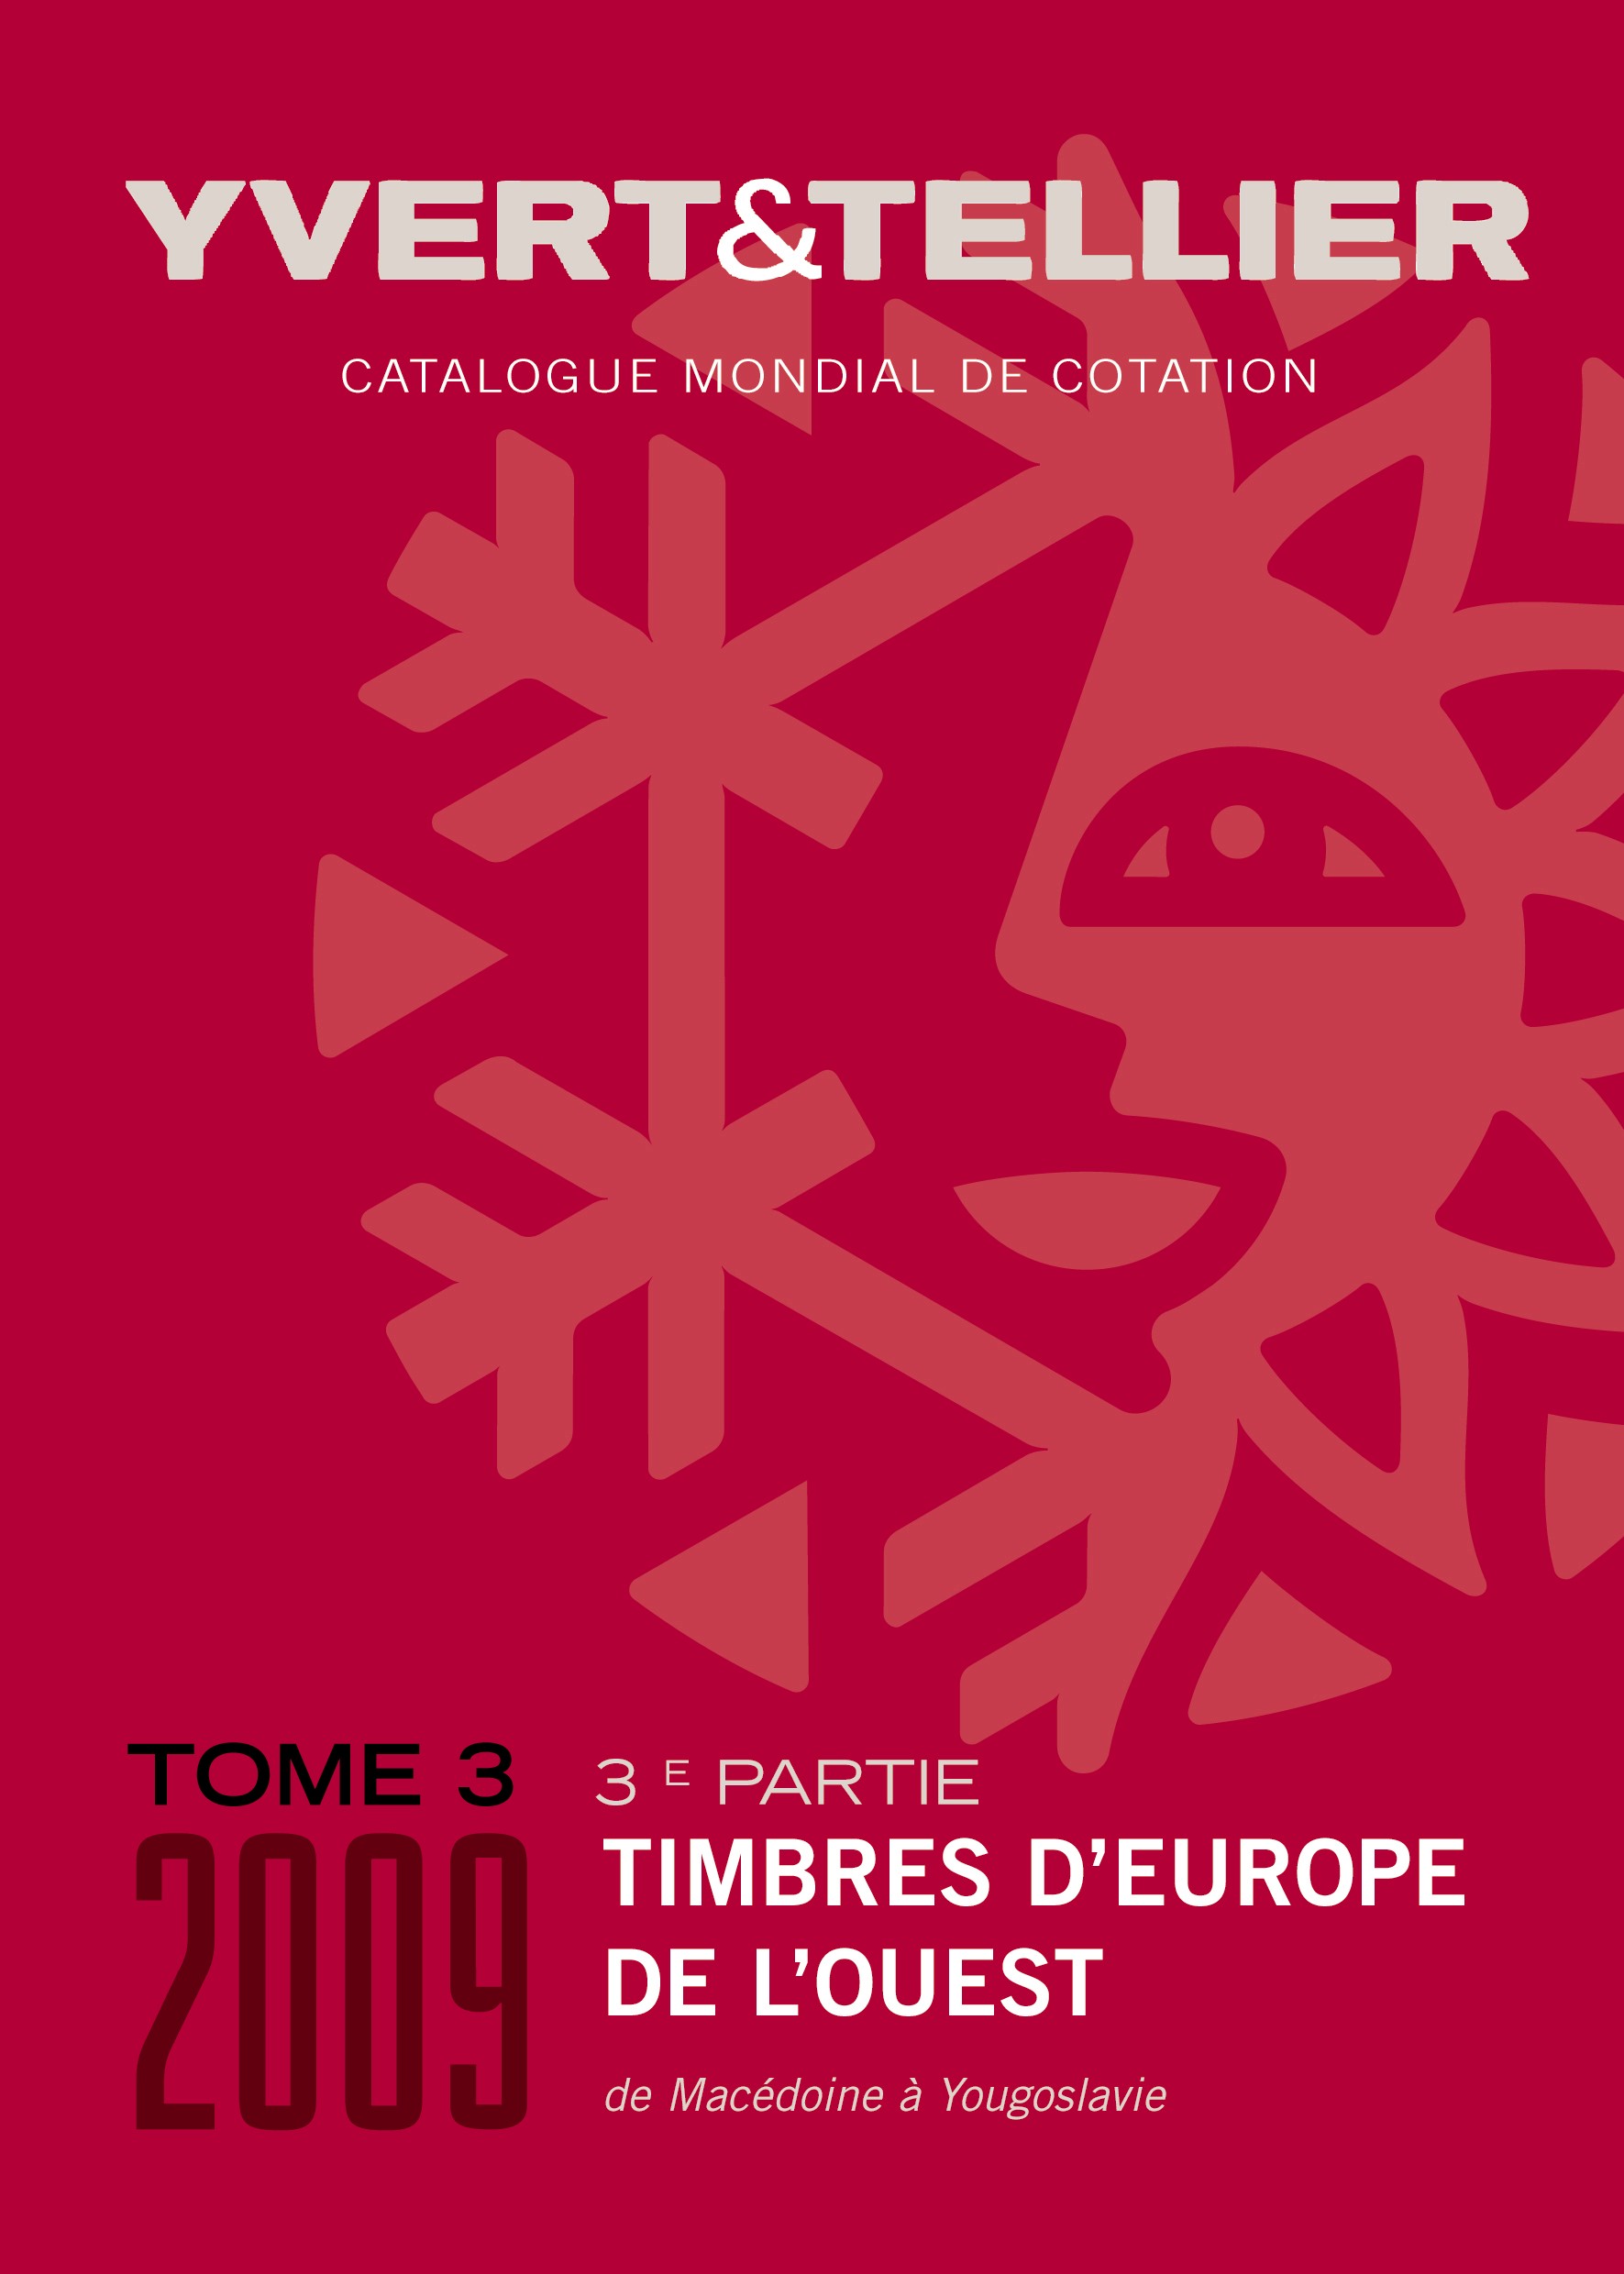 Yvert&Tellier TOME 3/Partie 3 - 2009 Timbres d'Europe de l'Oue